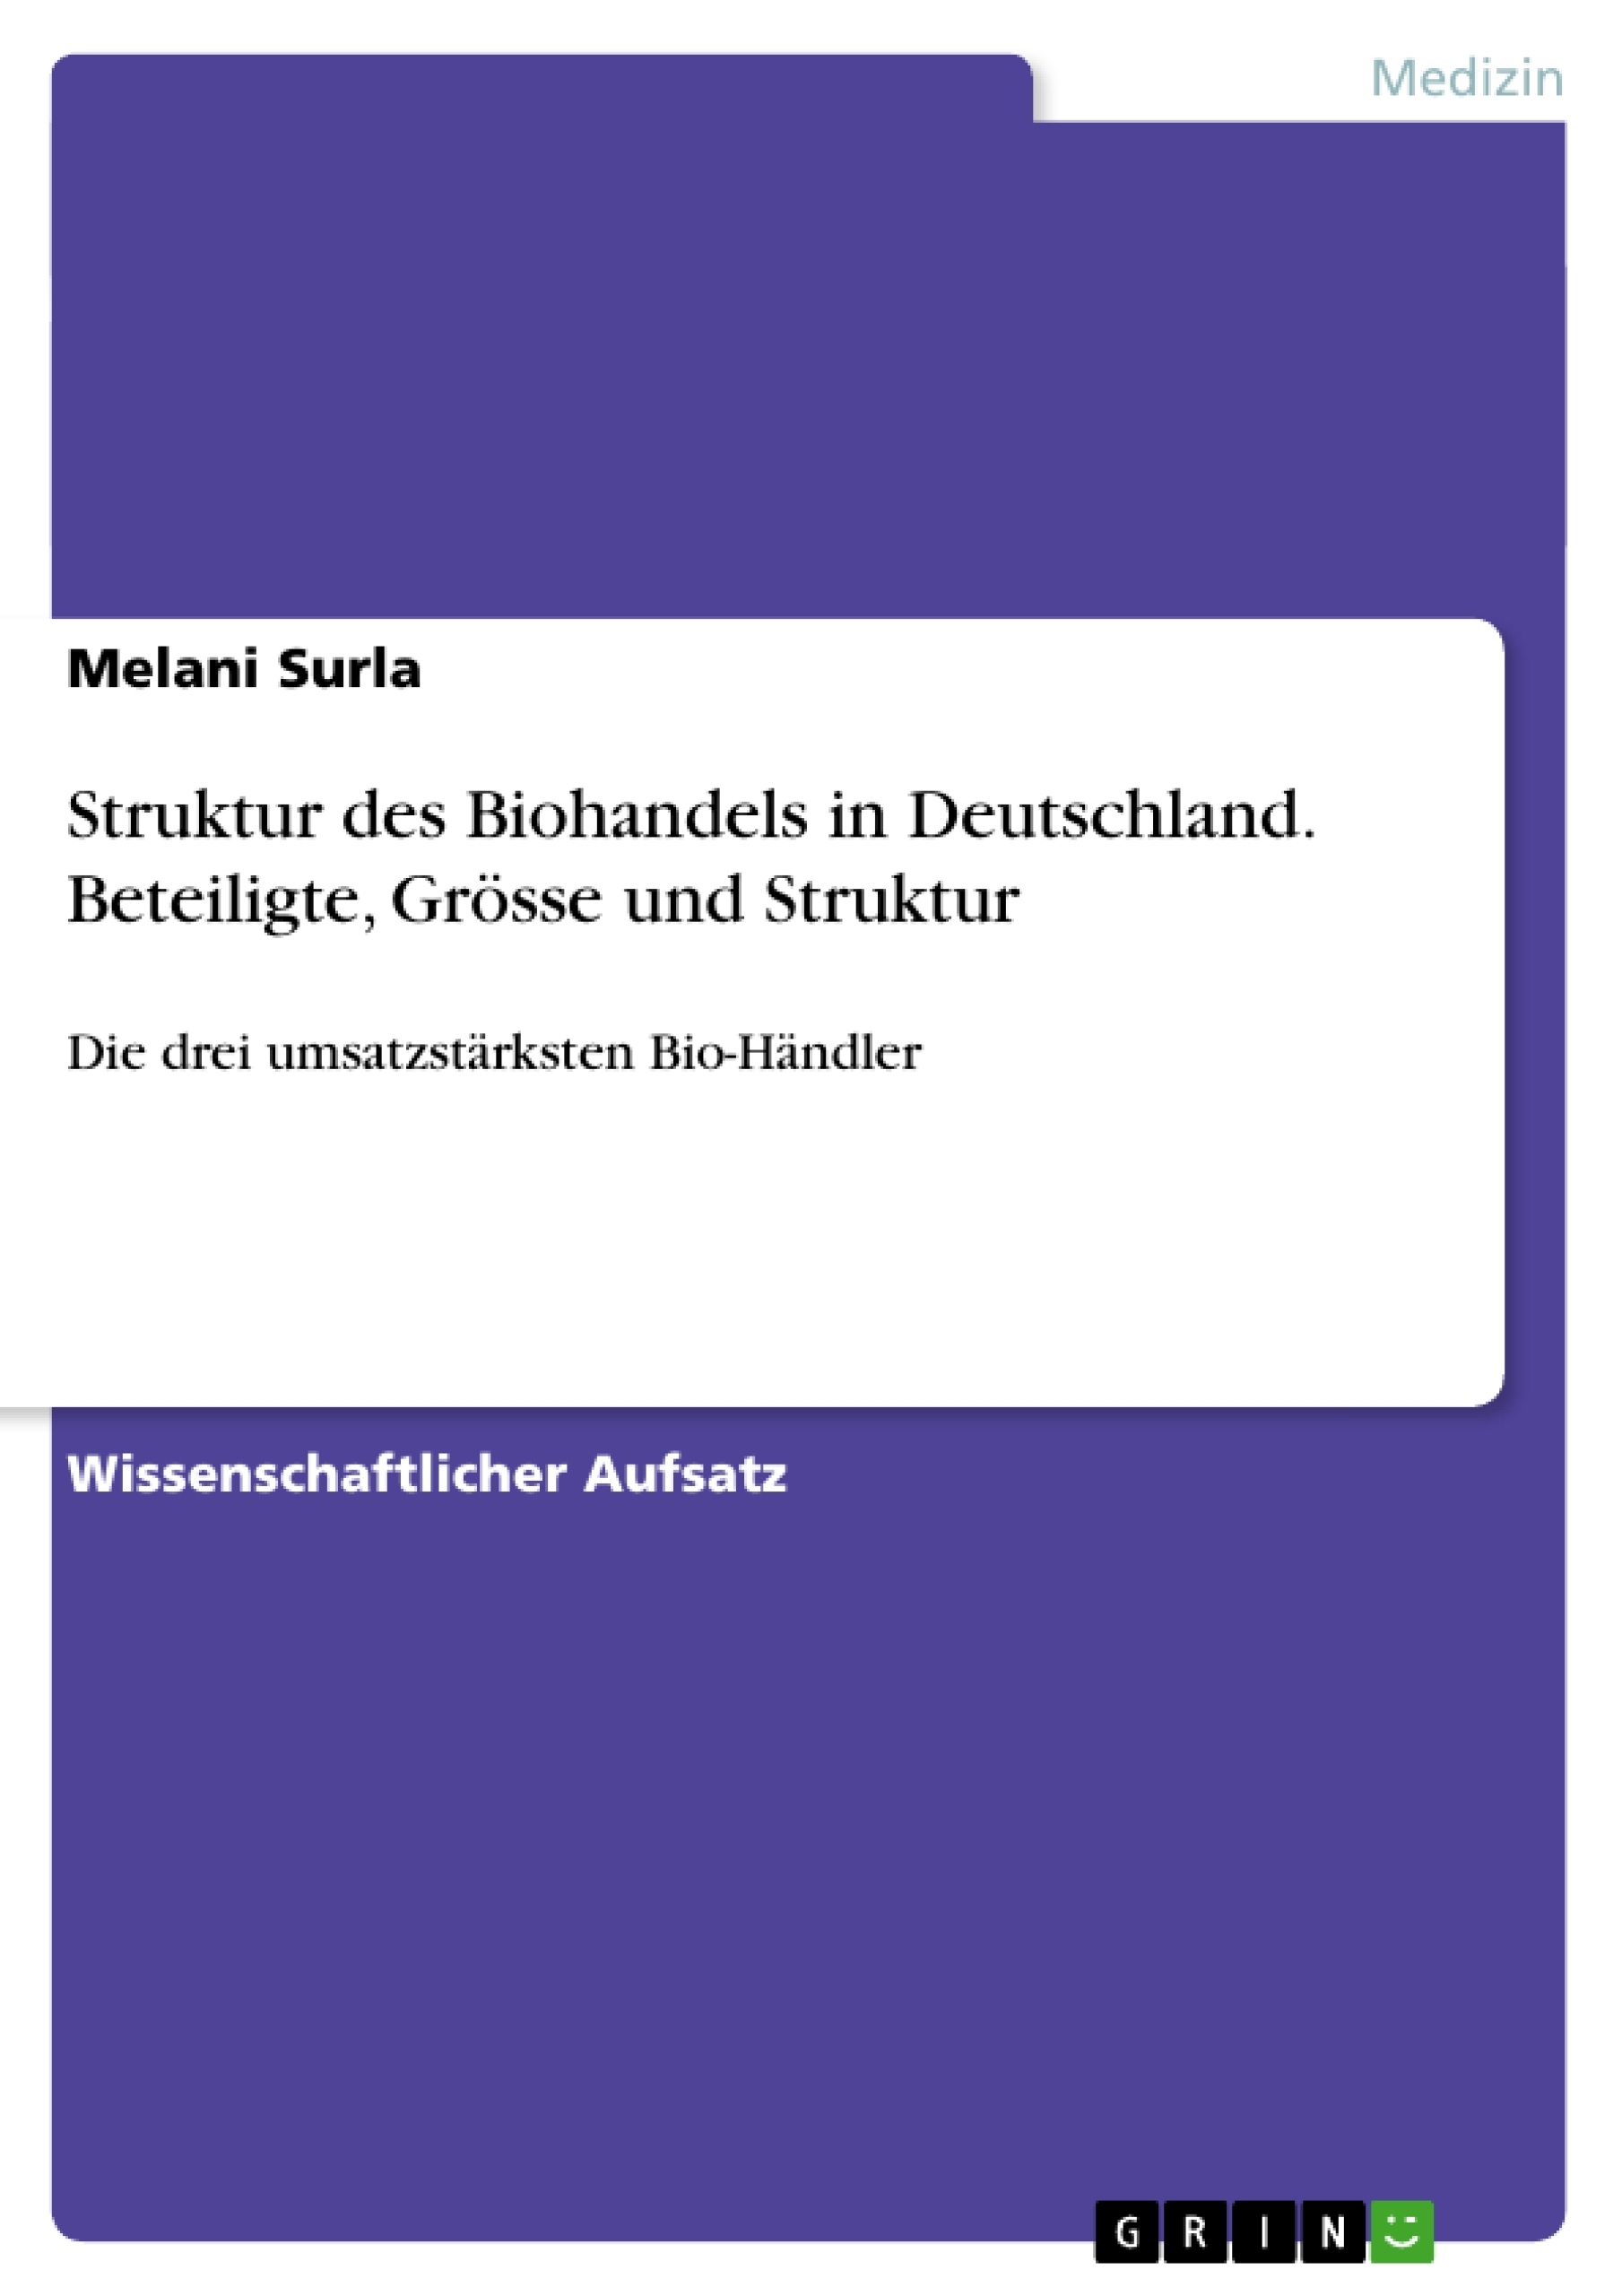 Titre: Struktur des Biohandels in Deutschland. Beteiligte, Grösse und Struktur